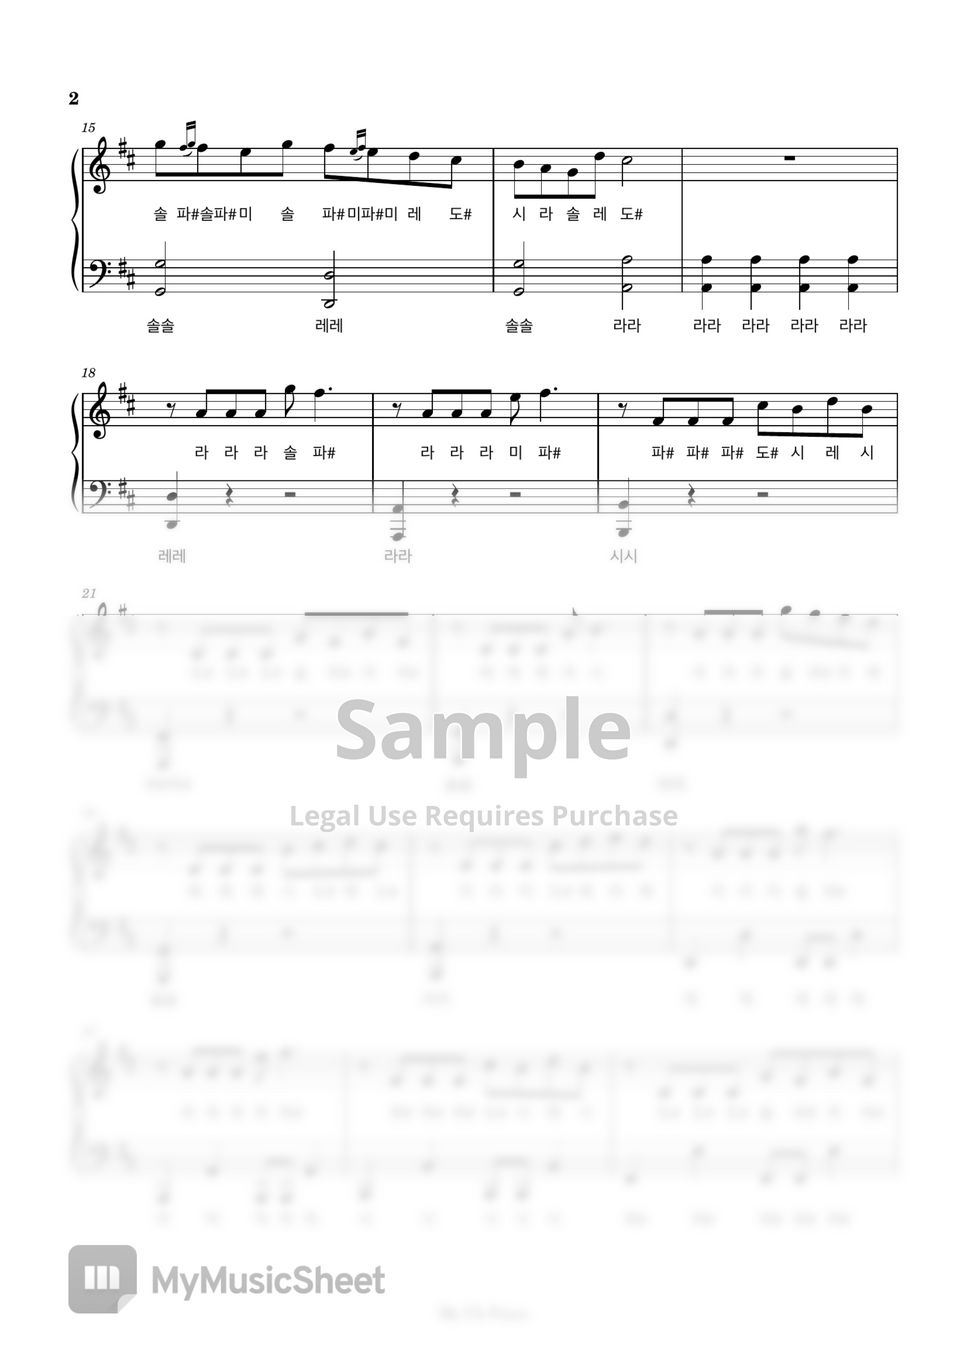 슬기로운 의사생활 ost - Canon Rock (슬기로운 의사생활) (쉬운계이름악보) by My Uk Piano